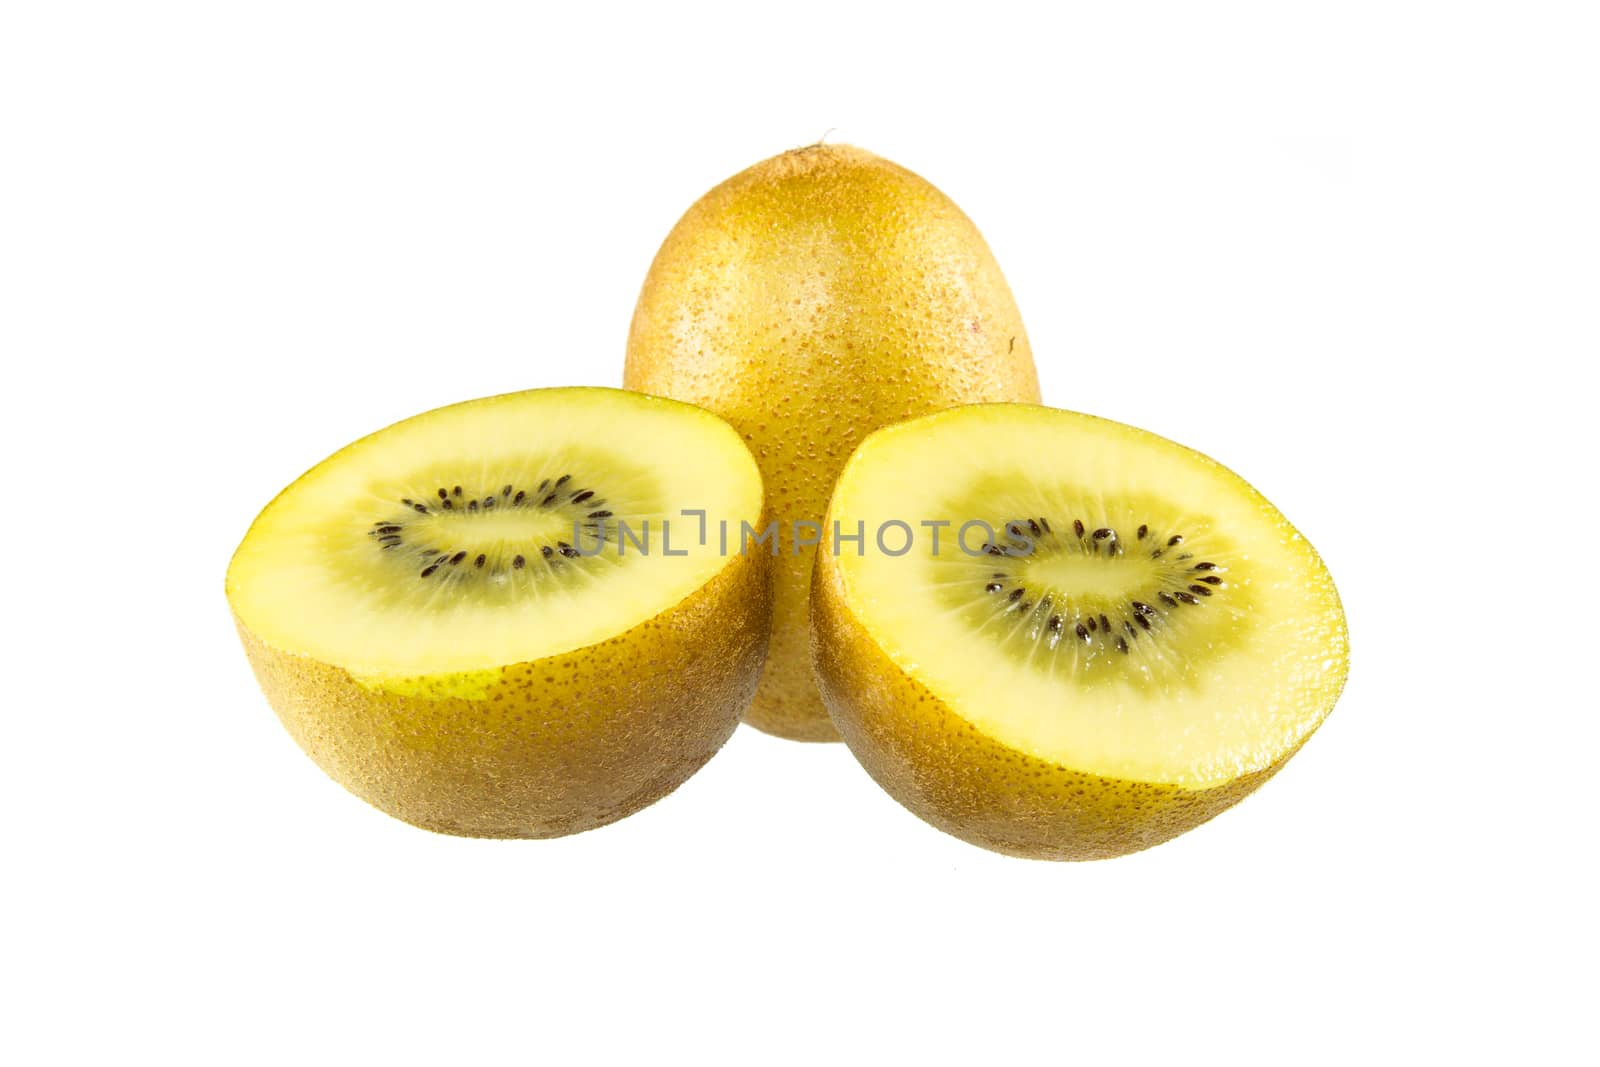 yellow gold kiwi fruit isolated on white background